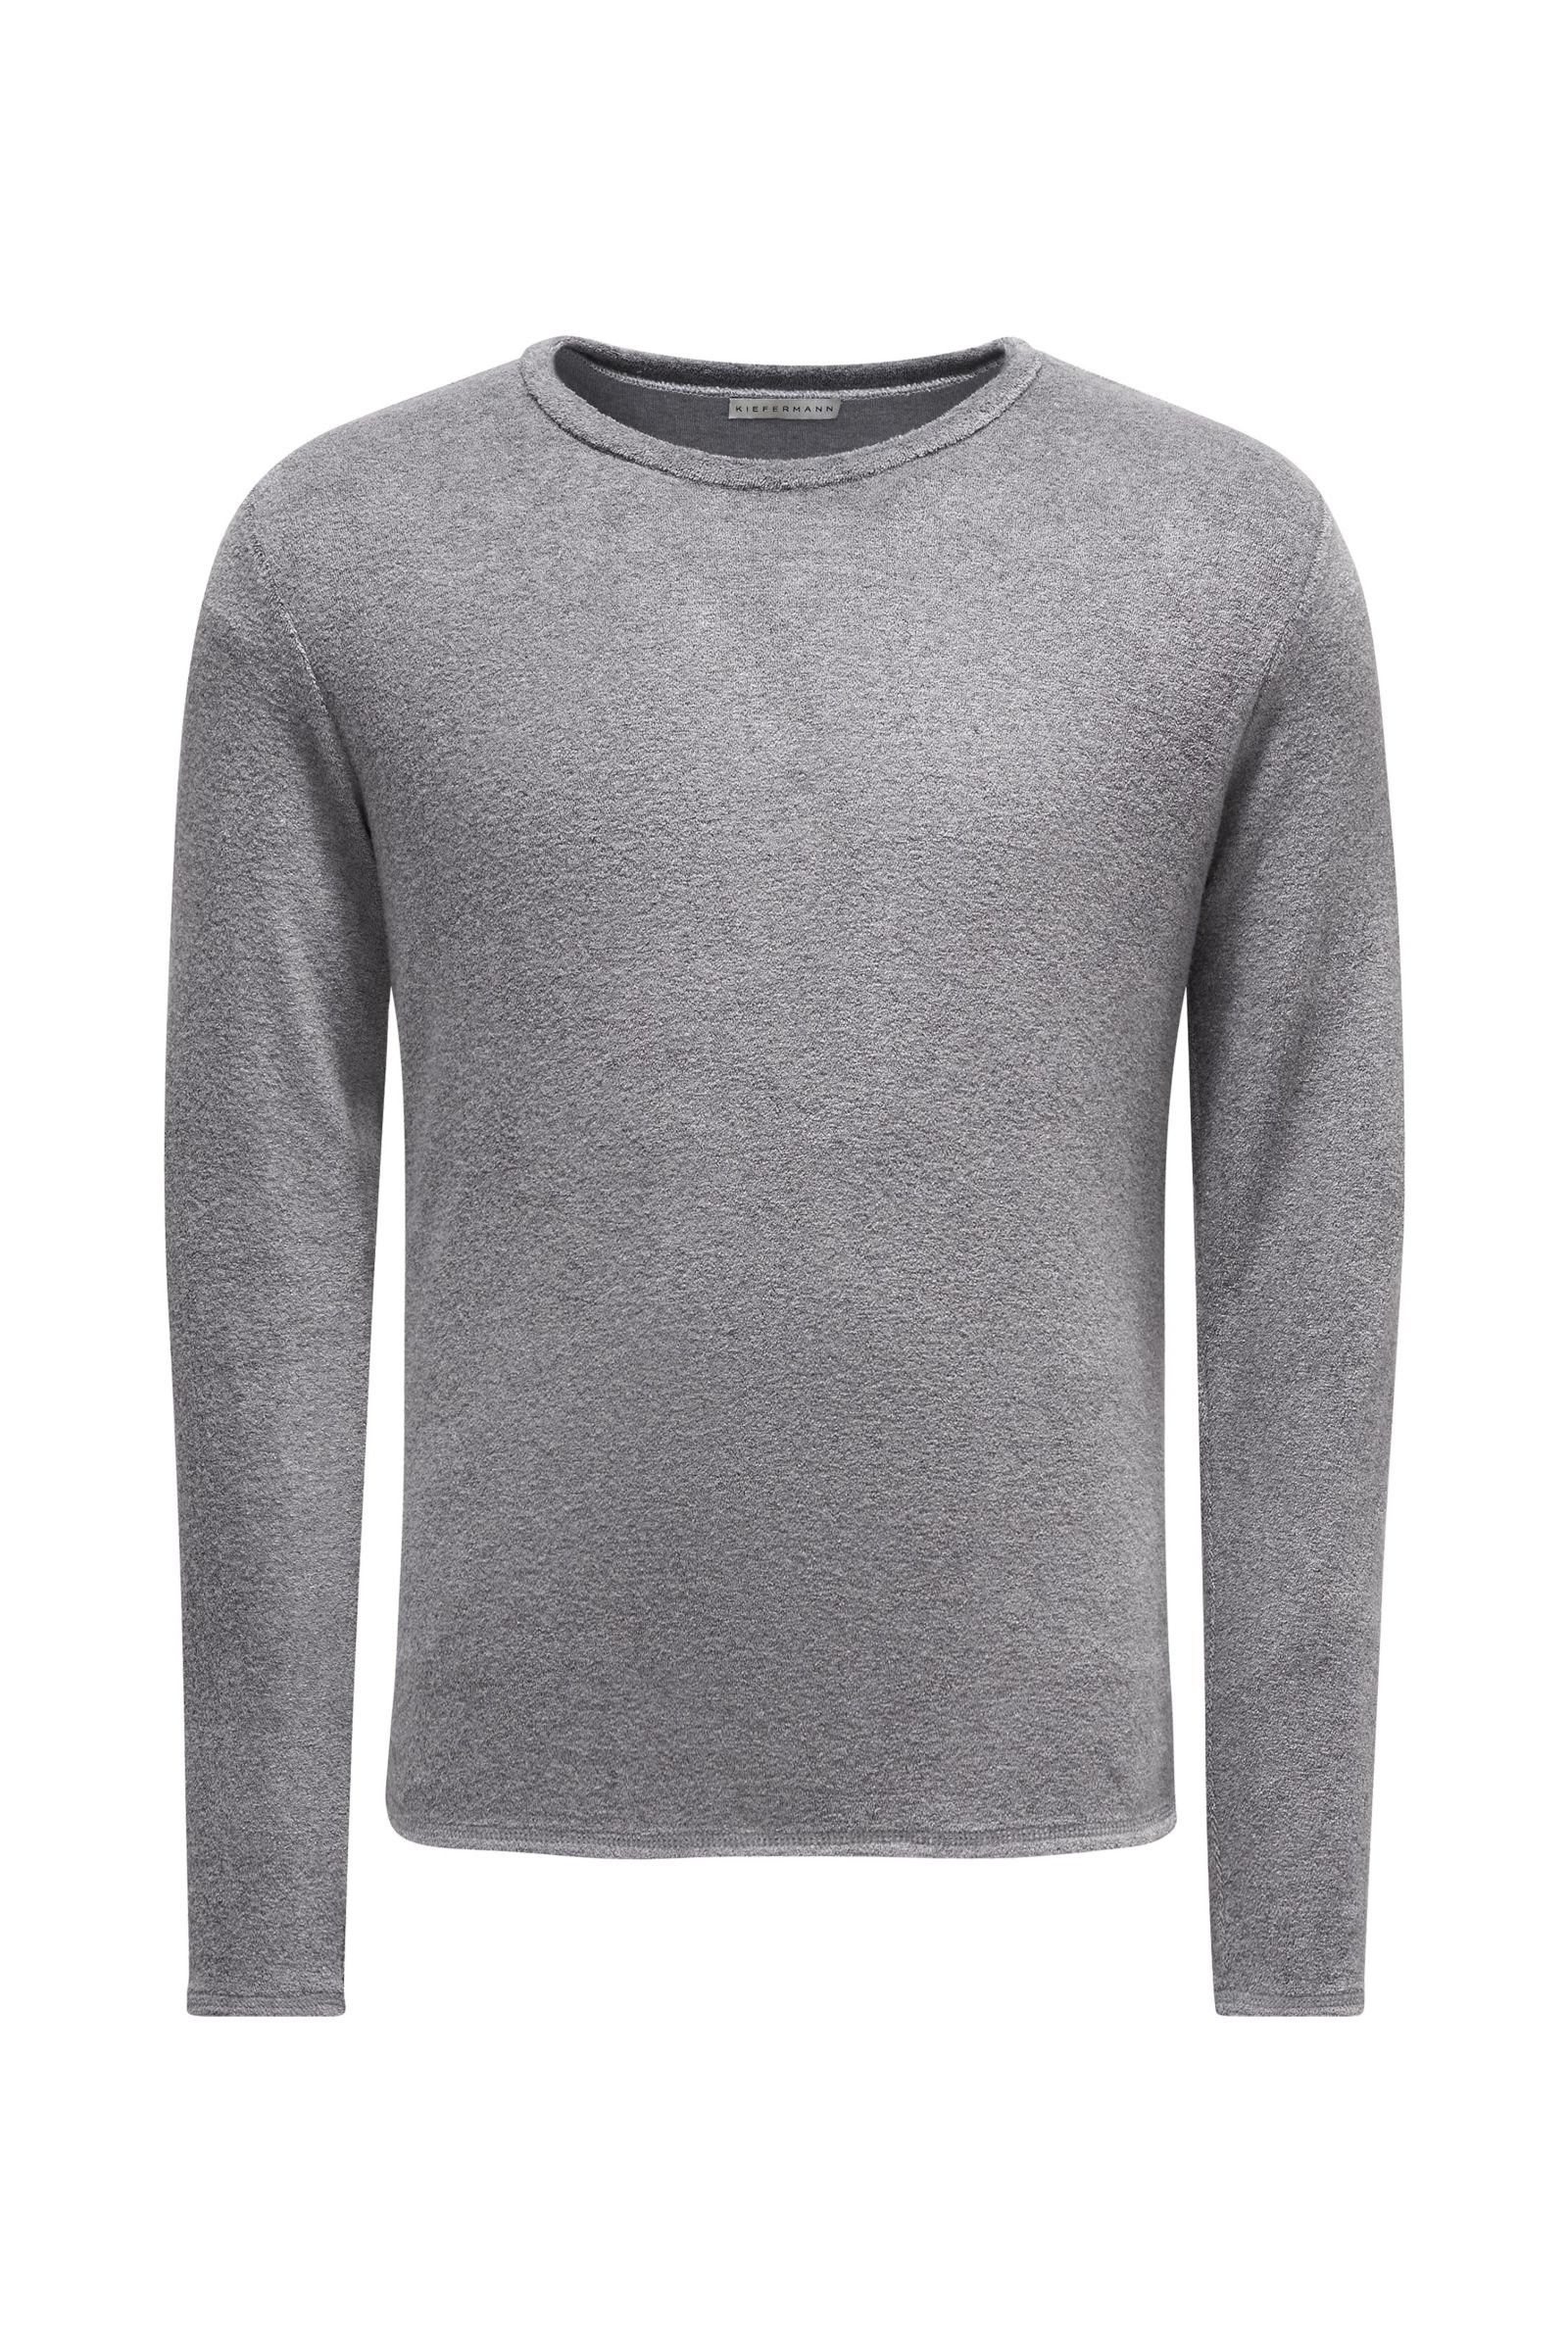 Terry fabric crew neck sweatshirt 'Veit' grey